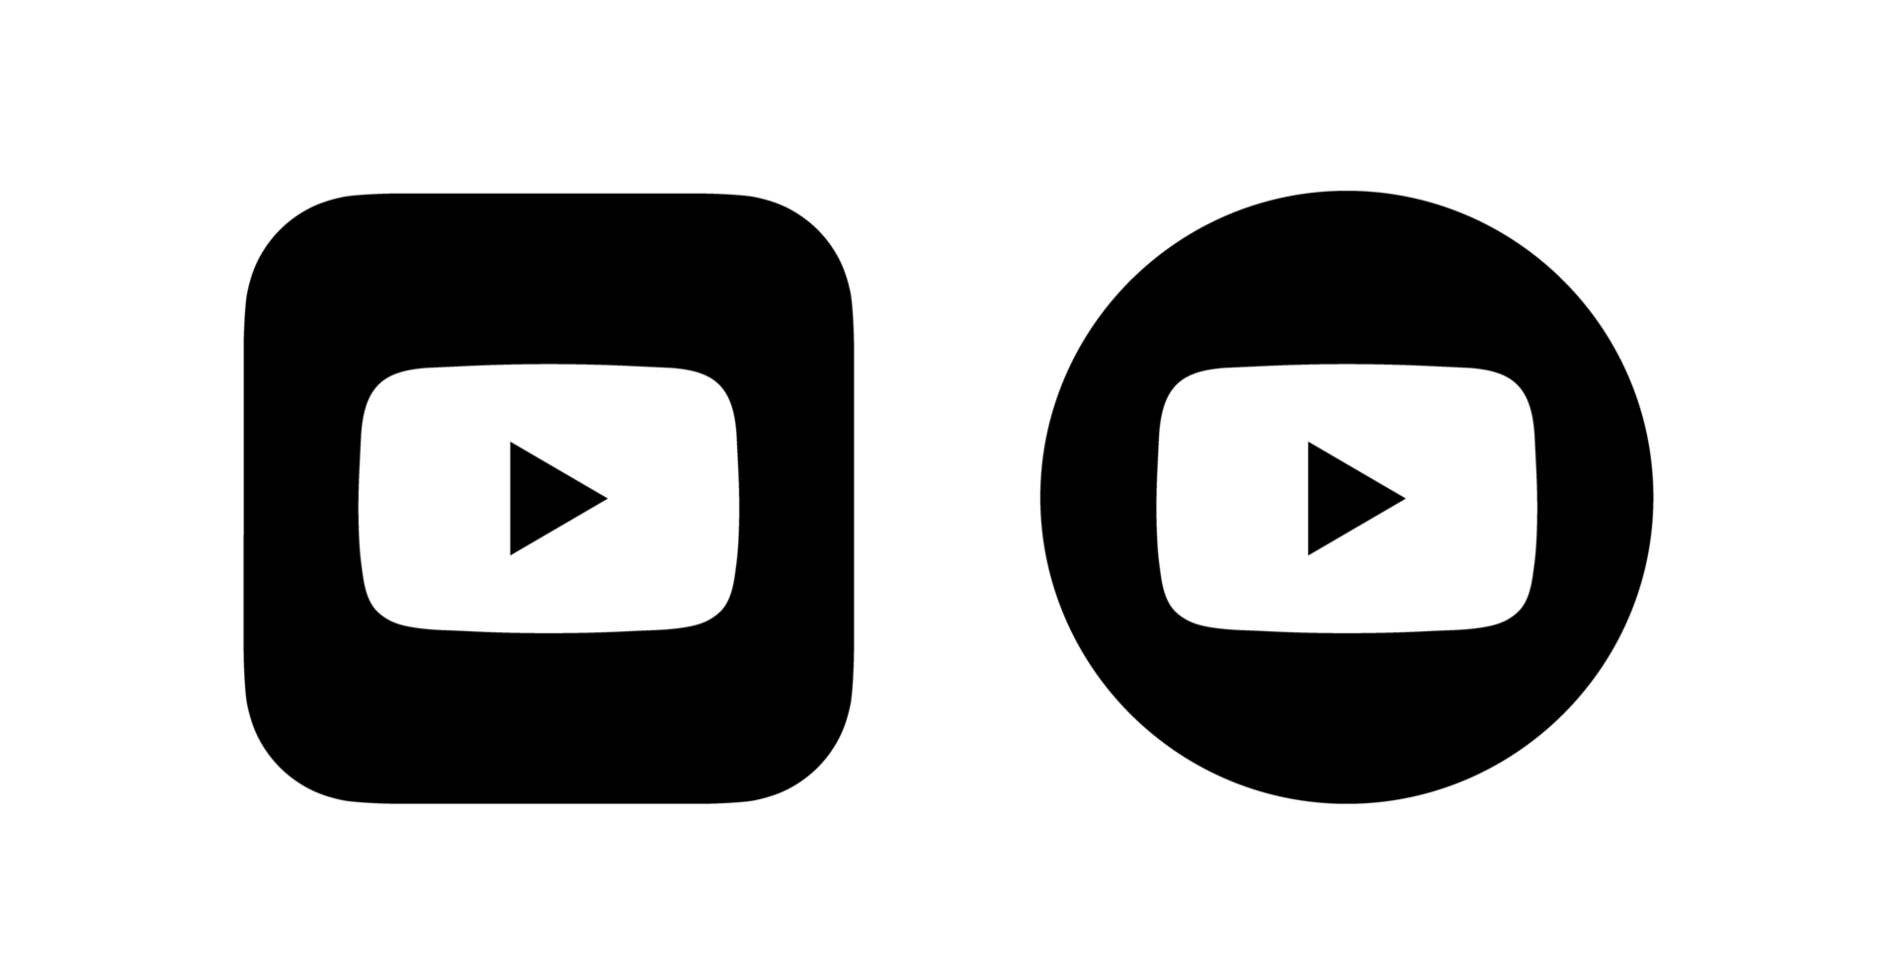 Nhấn vào hình ảnh liên quan để khám phá logo Youtube trong suốt đầy thú vị và sáng tạo. Với thiết kế hiện đại, chúng sẽ làm cho kênh Youtube của bạn nổi bật và thu hút hơn bao giờ hết.